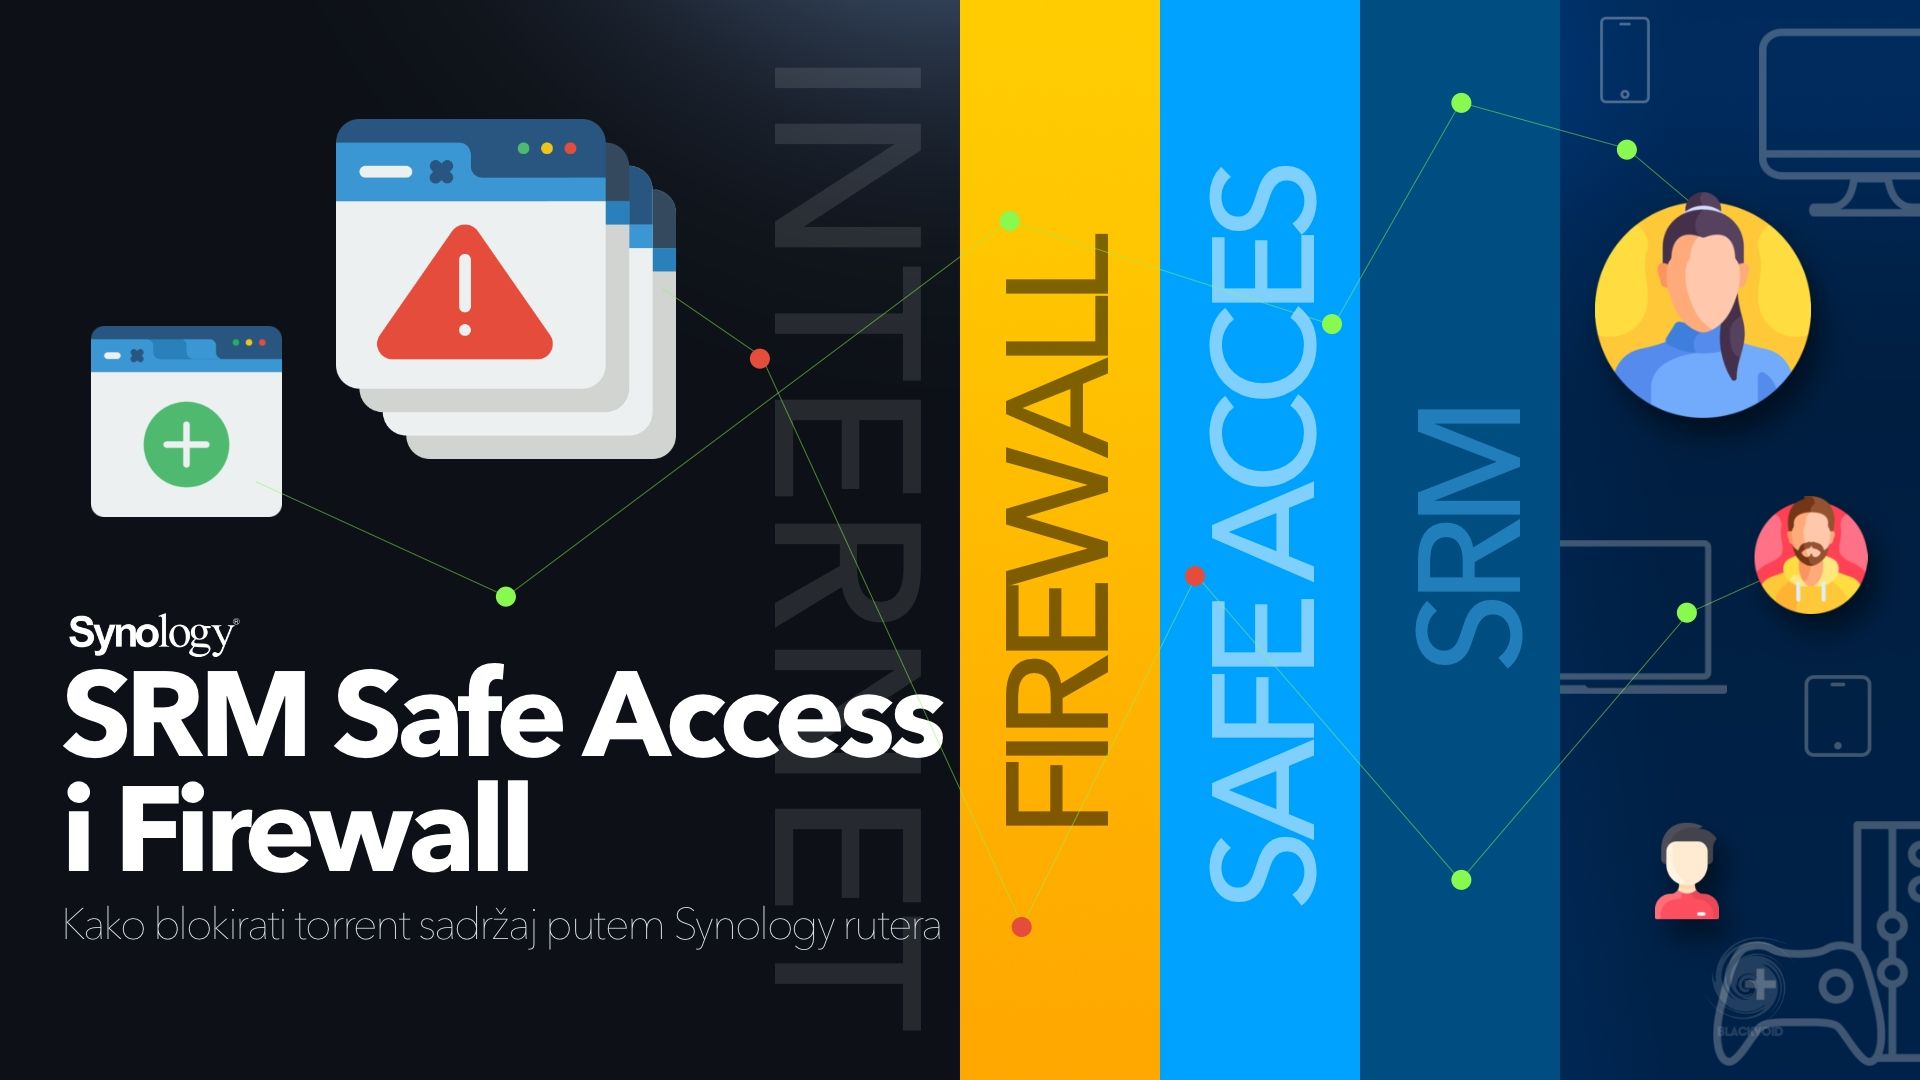 Synology SRM Safe Access i Firewall - blokiranje torrenta